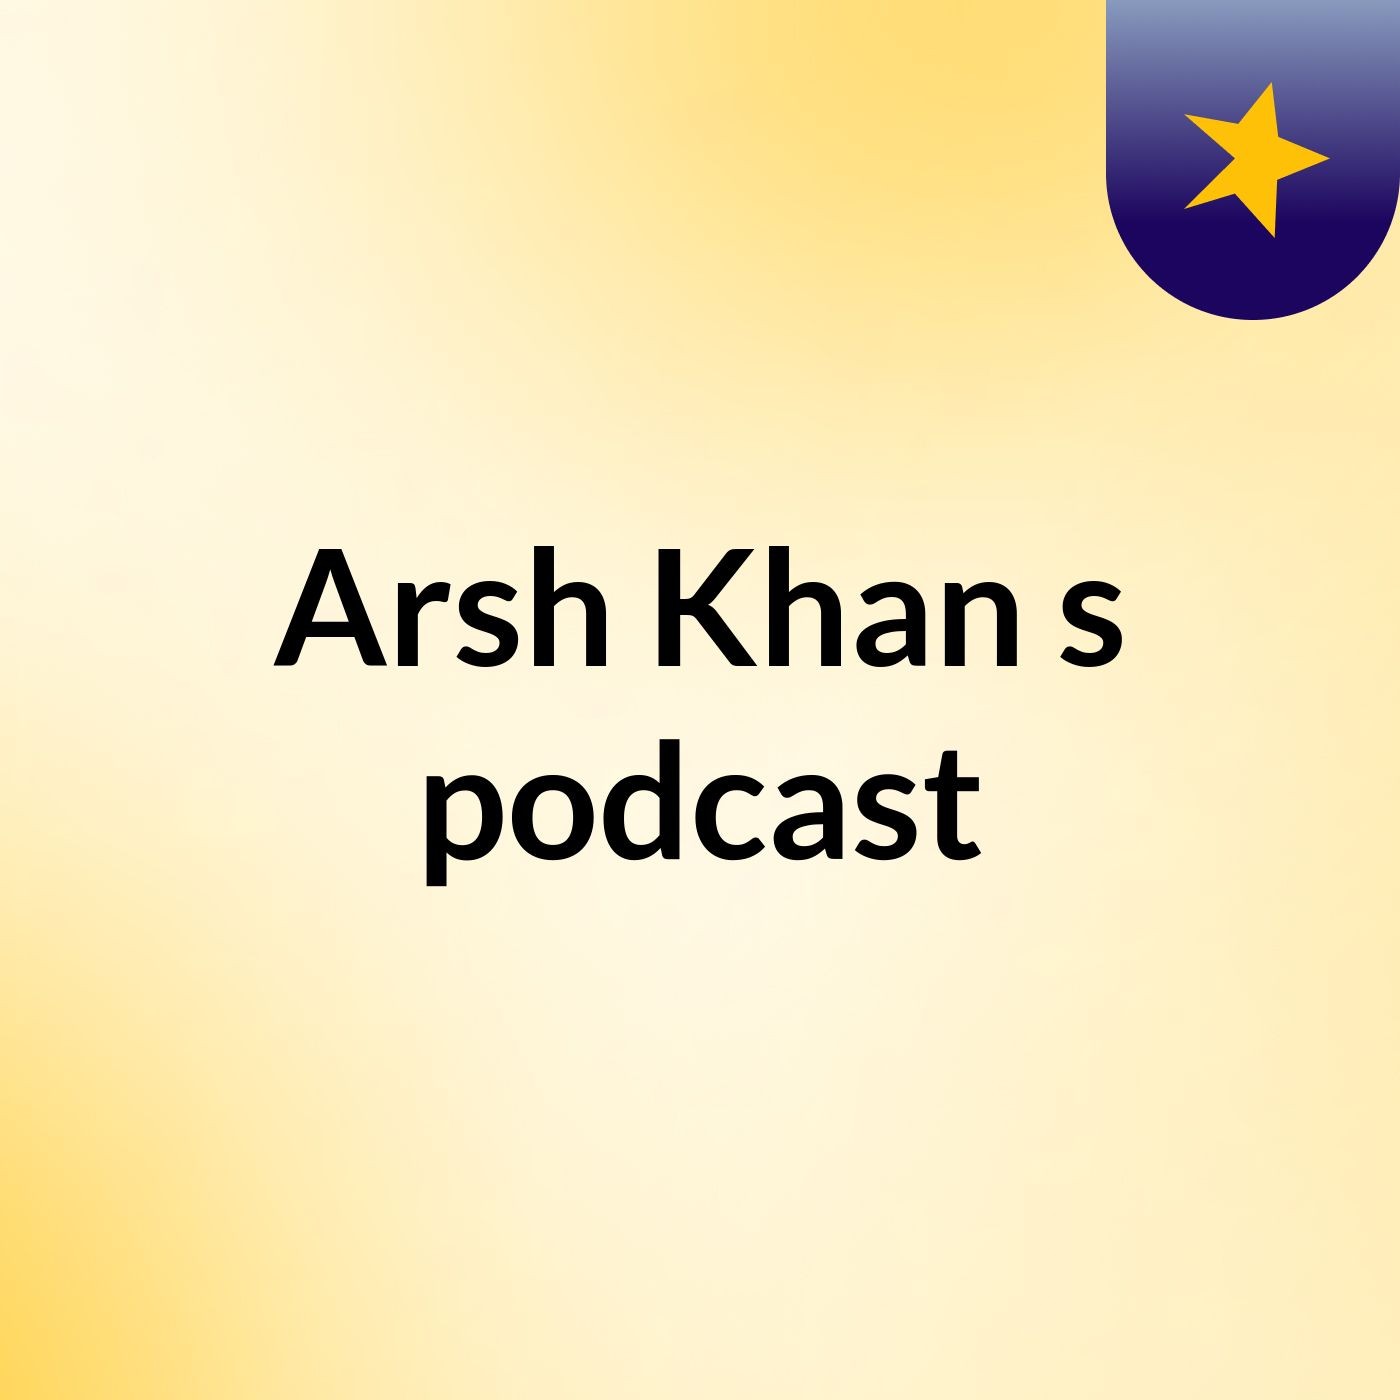 Episode 5 - Arsh Khan's podcast